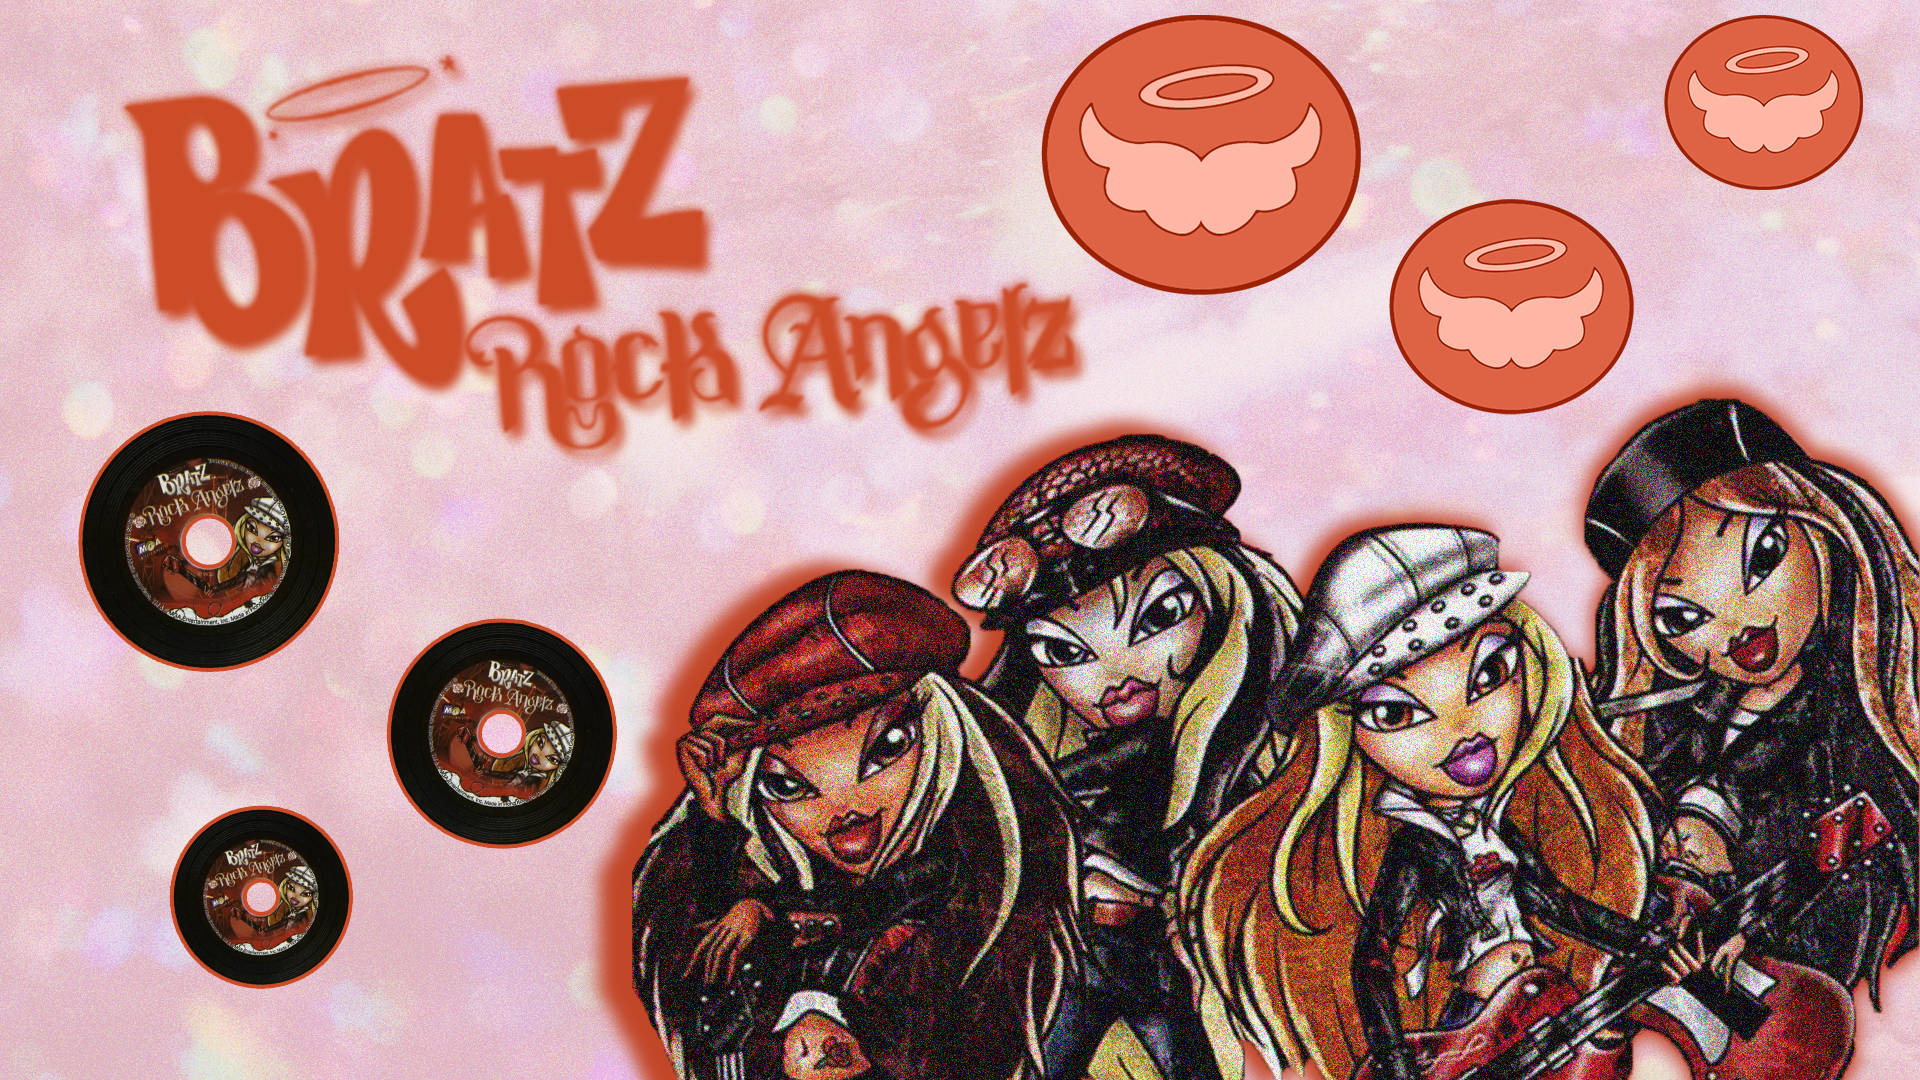 Girl Band Bratz Aesthetic Rock Angelz